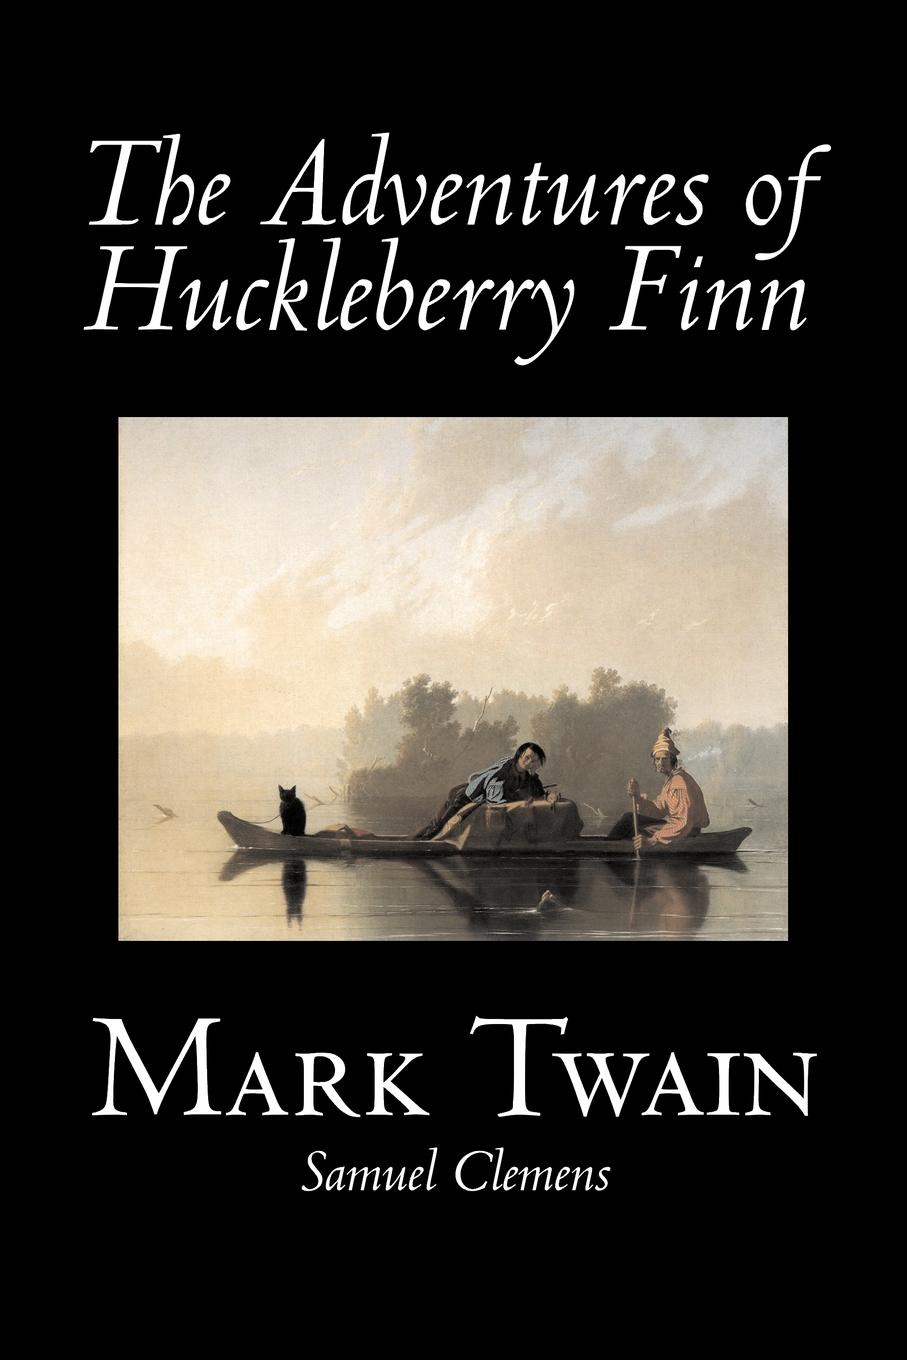 The Adventures of Huckleberry Finn by Mark Twain. The adventures of huckleberry finn mark twain